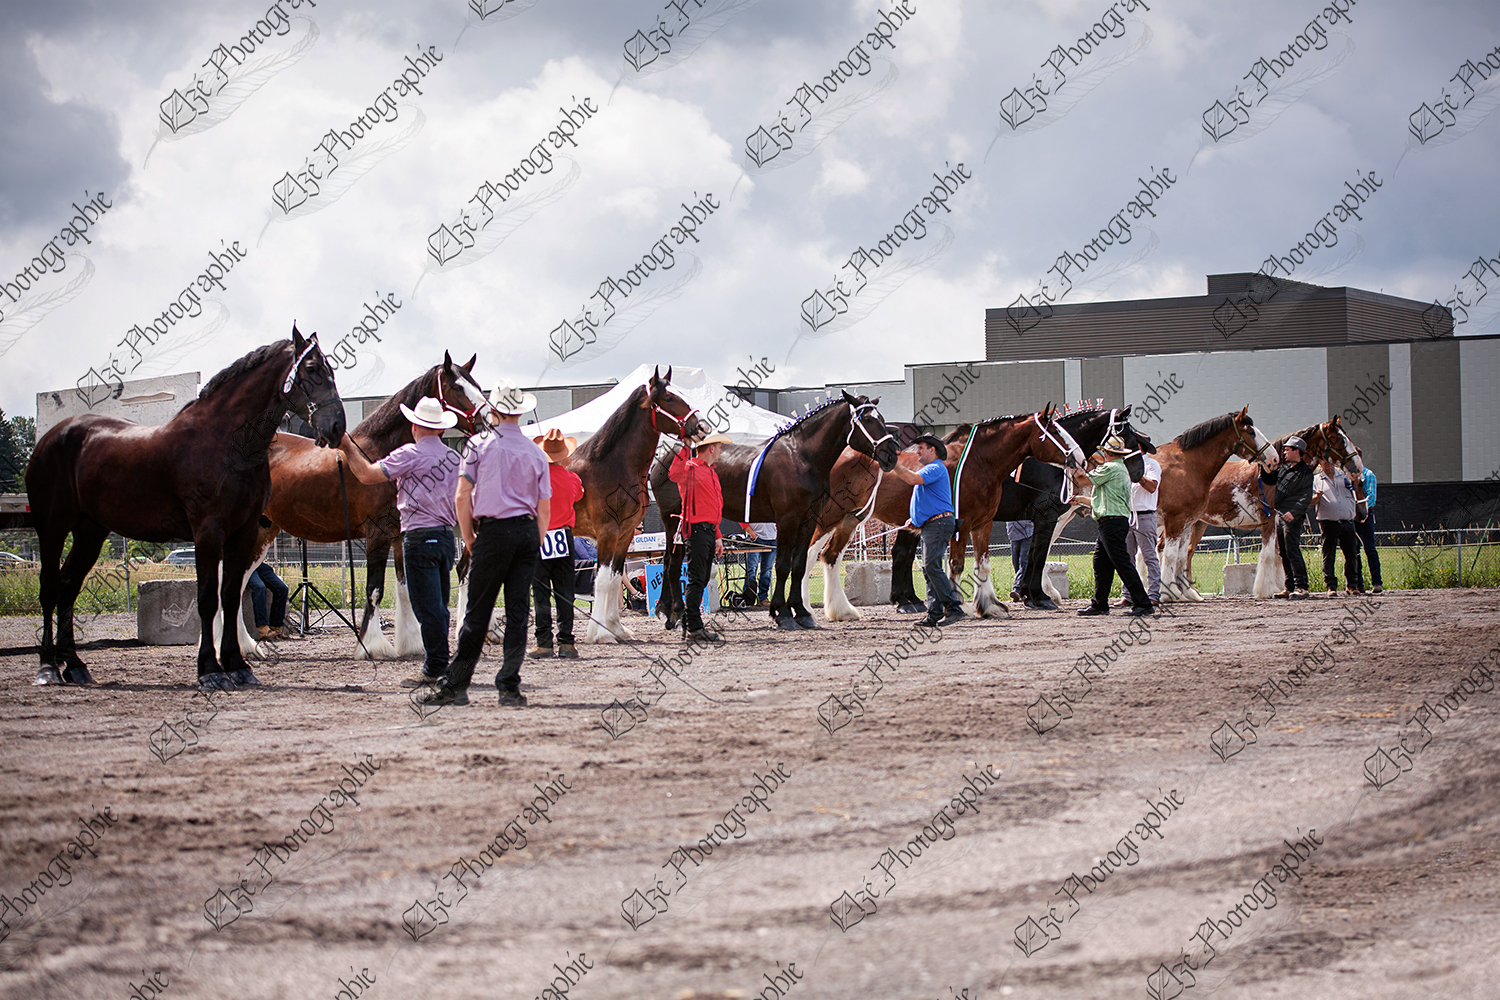 elze_photo_6828_competition_equestre_chevaux_big_horses_show